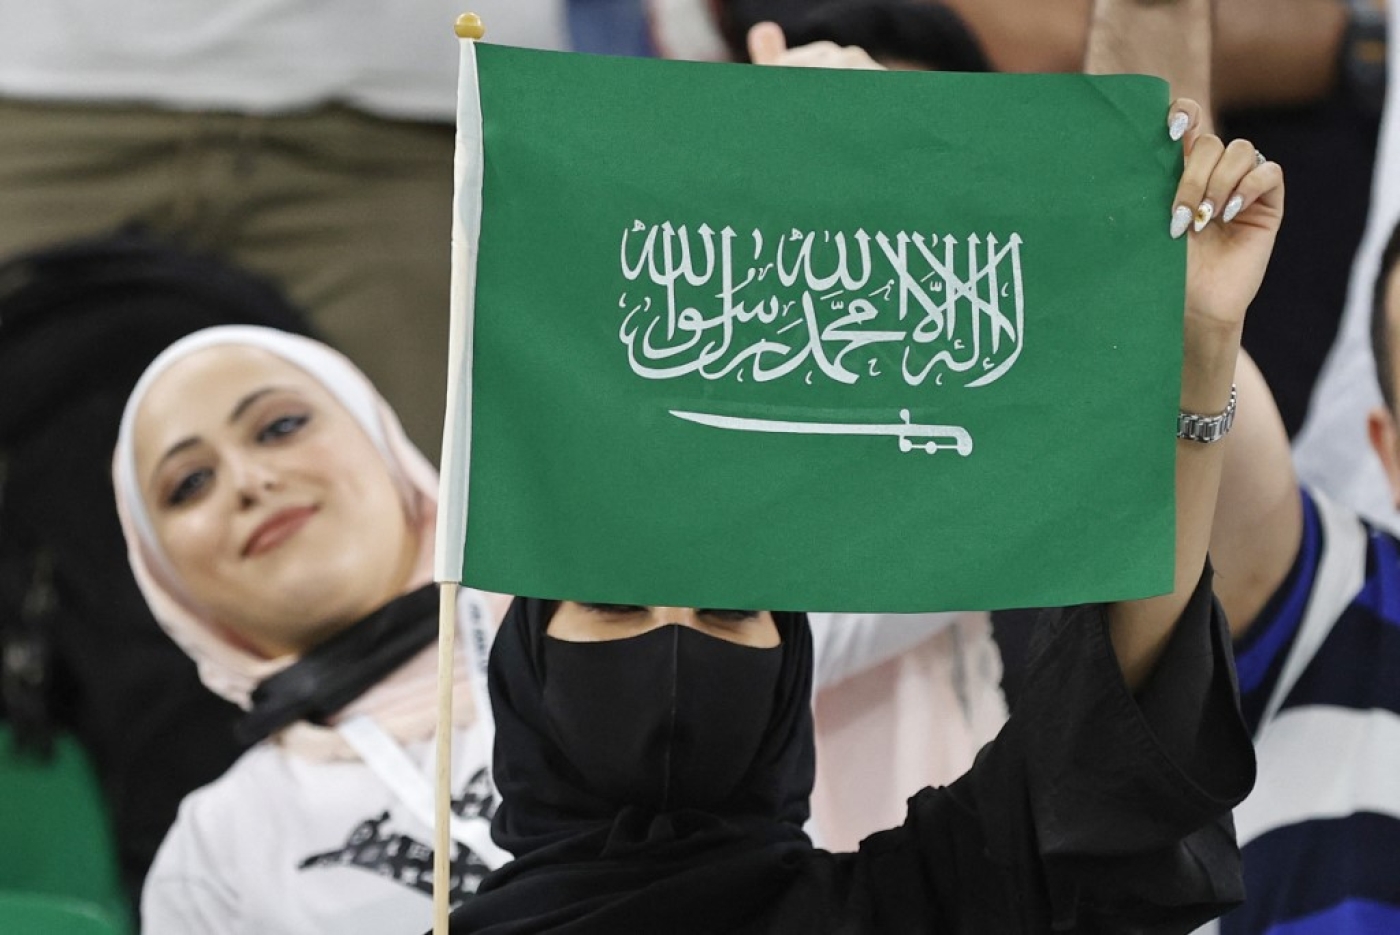 Une nouvelle loi a été votée en Arabie saoudite concernant le drapeau et l’hymne national du royaume (AFP/Jack Guez)